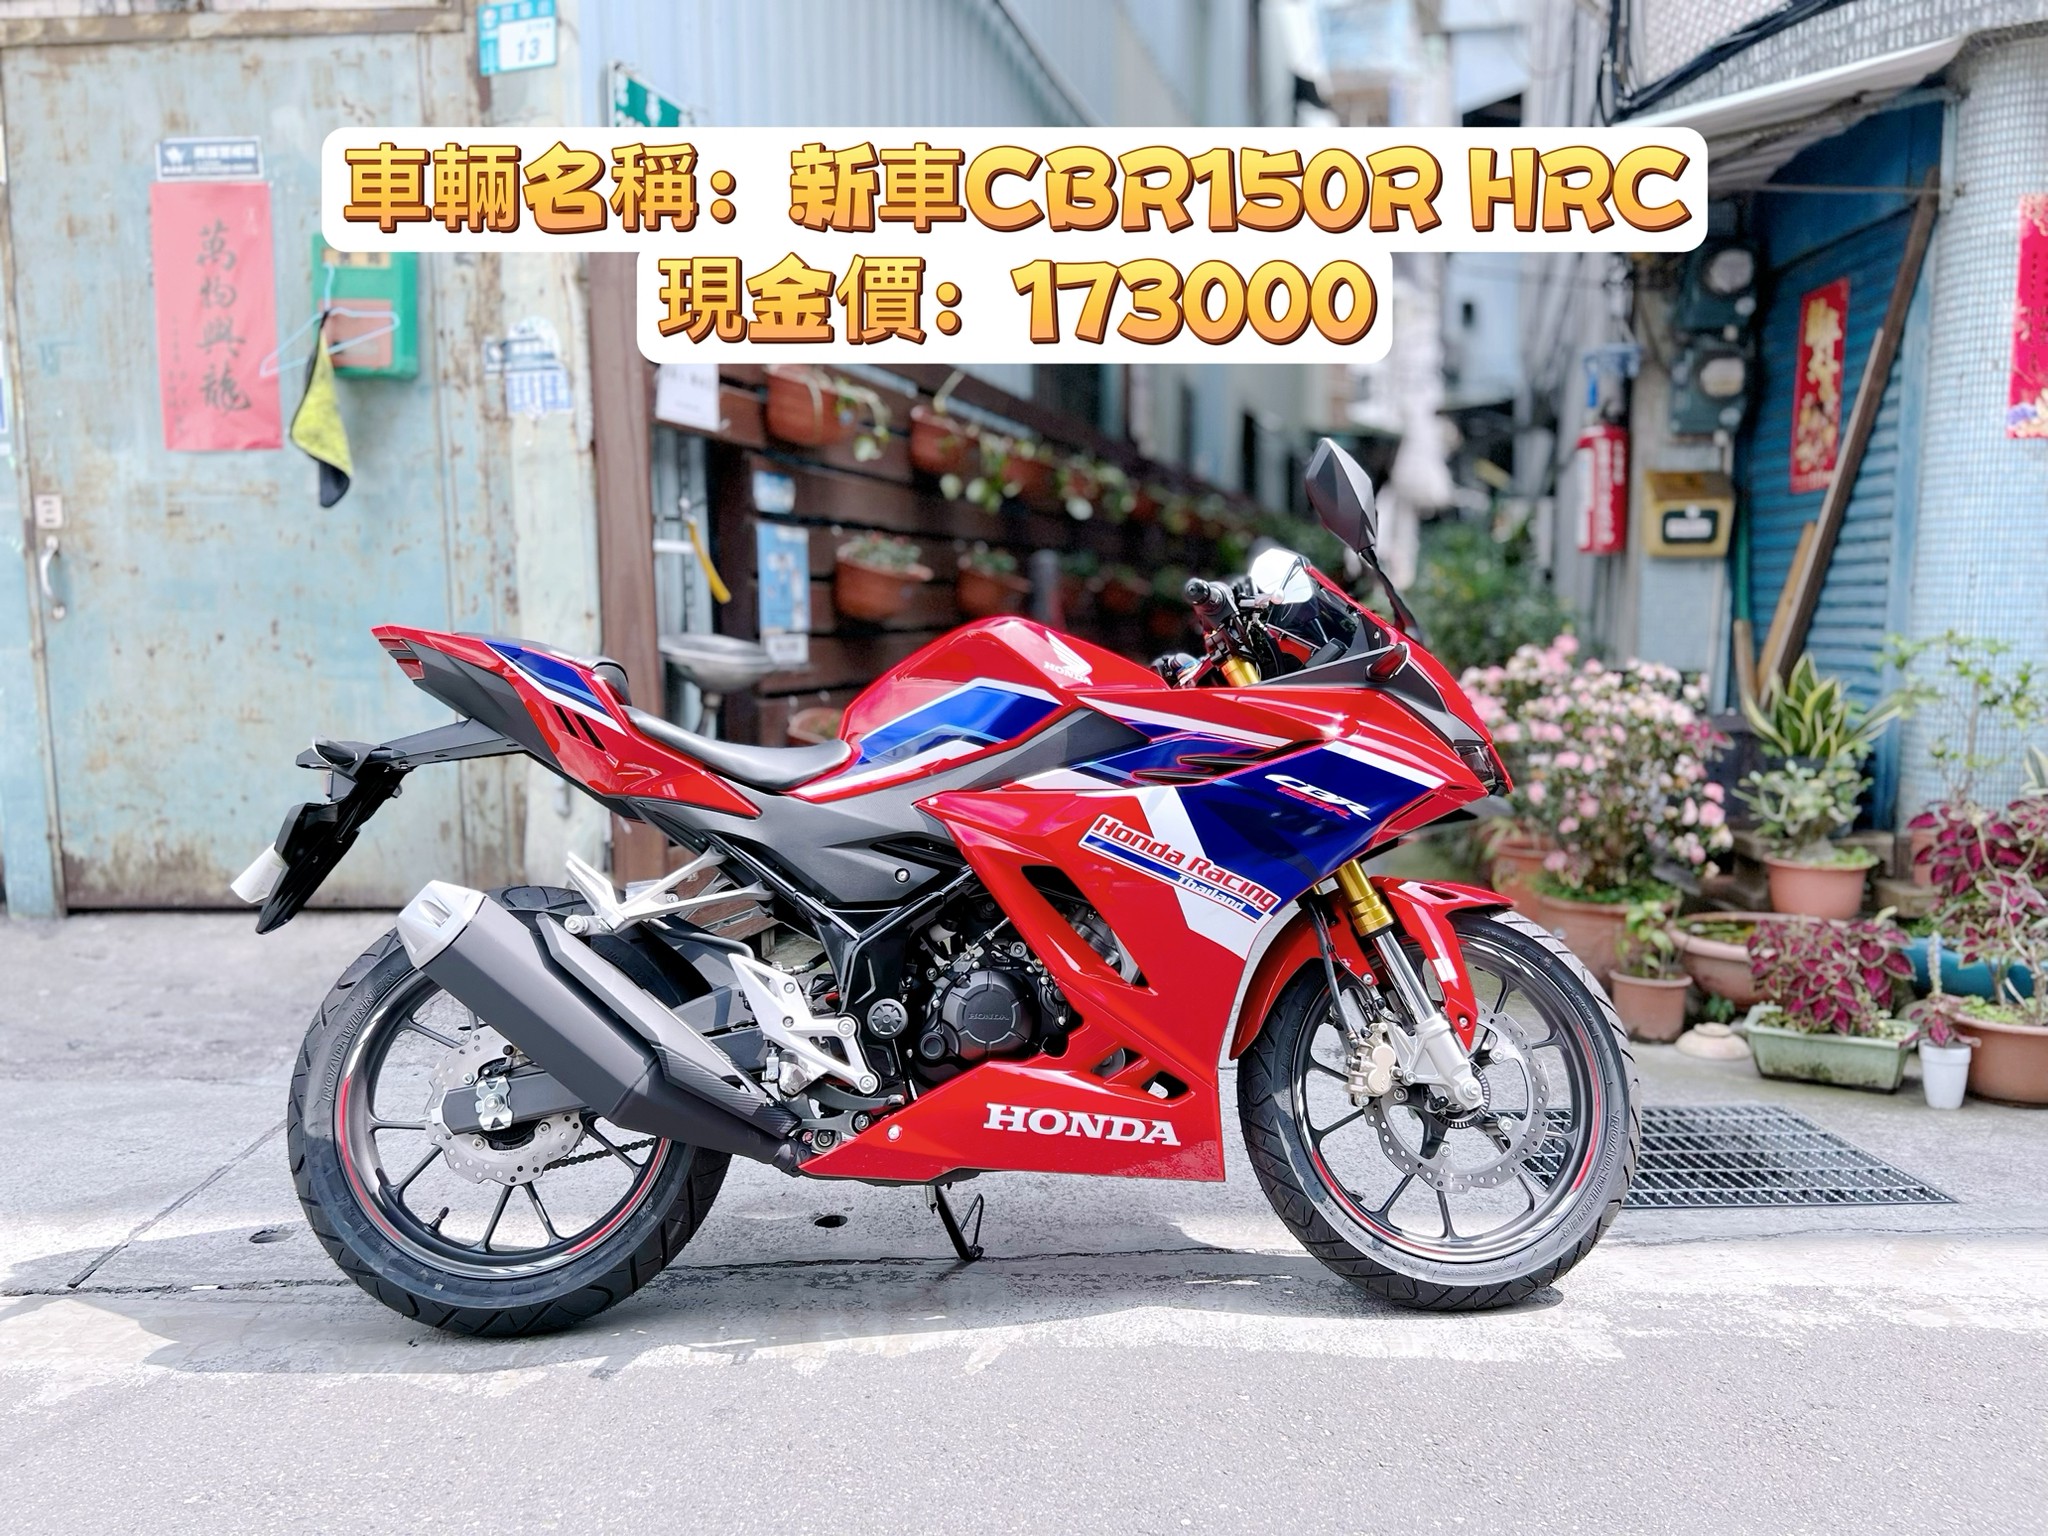 【大蔡】HONDA CBR150R - 「Webike-摩托車市」 新車HONDA CBR150R HRC